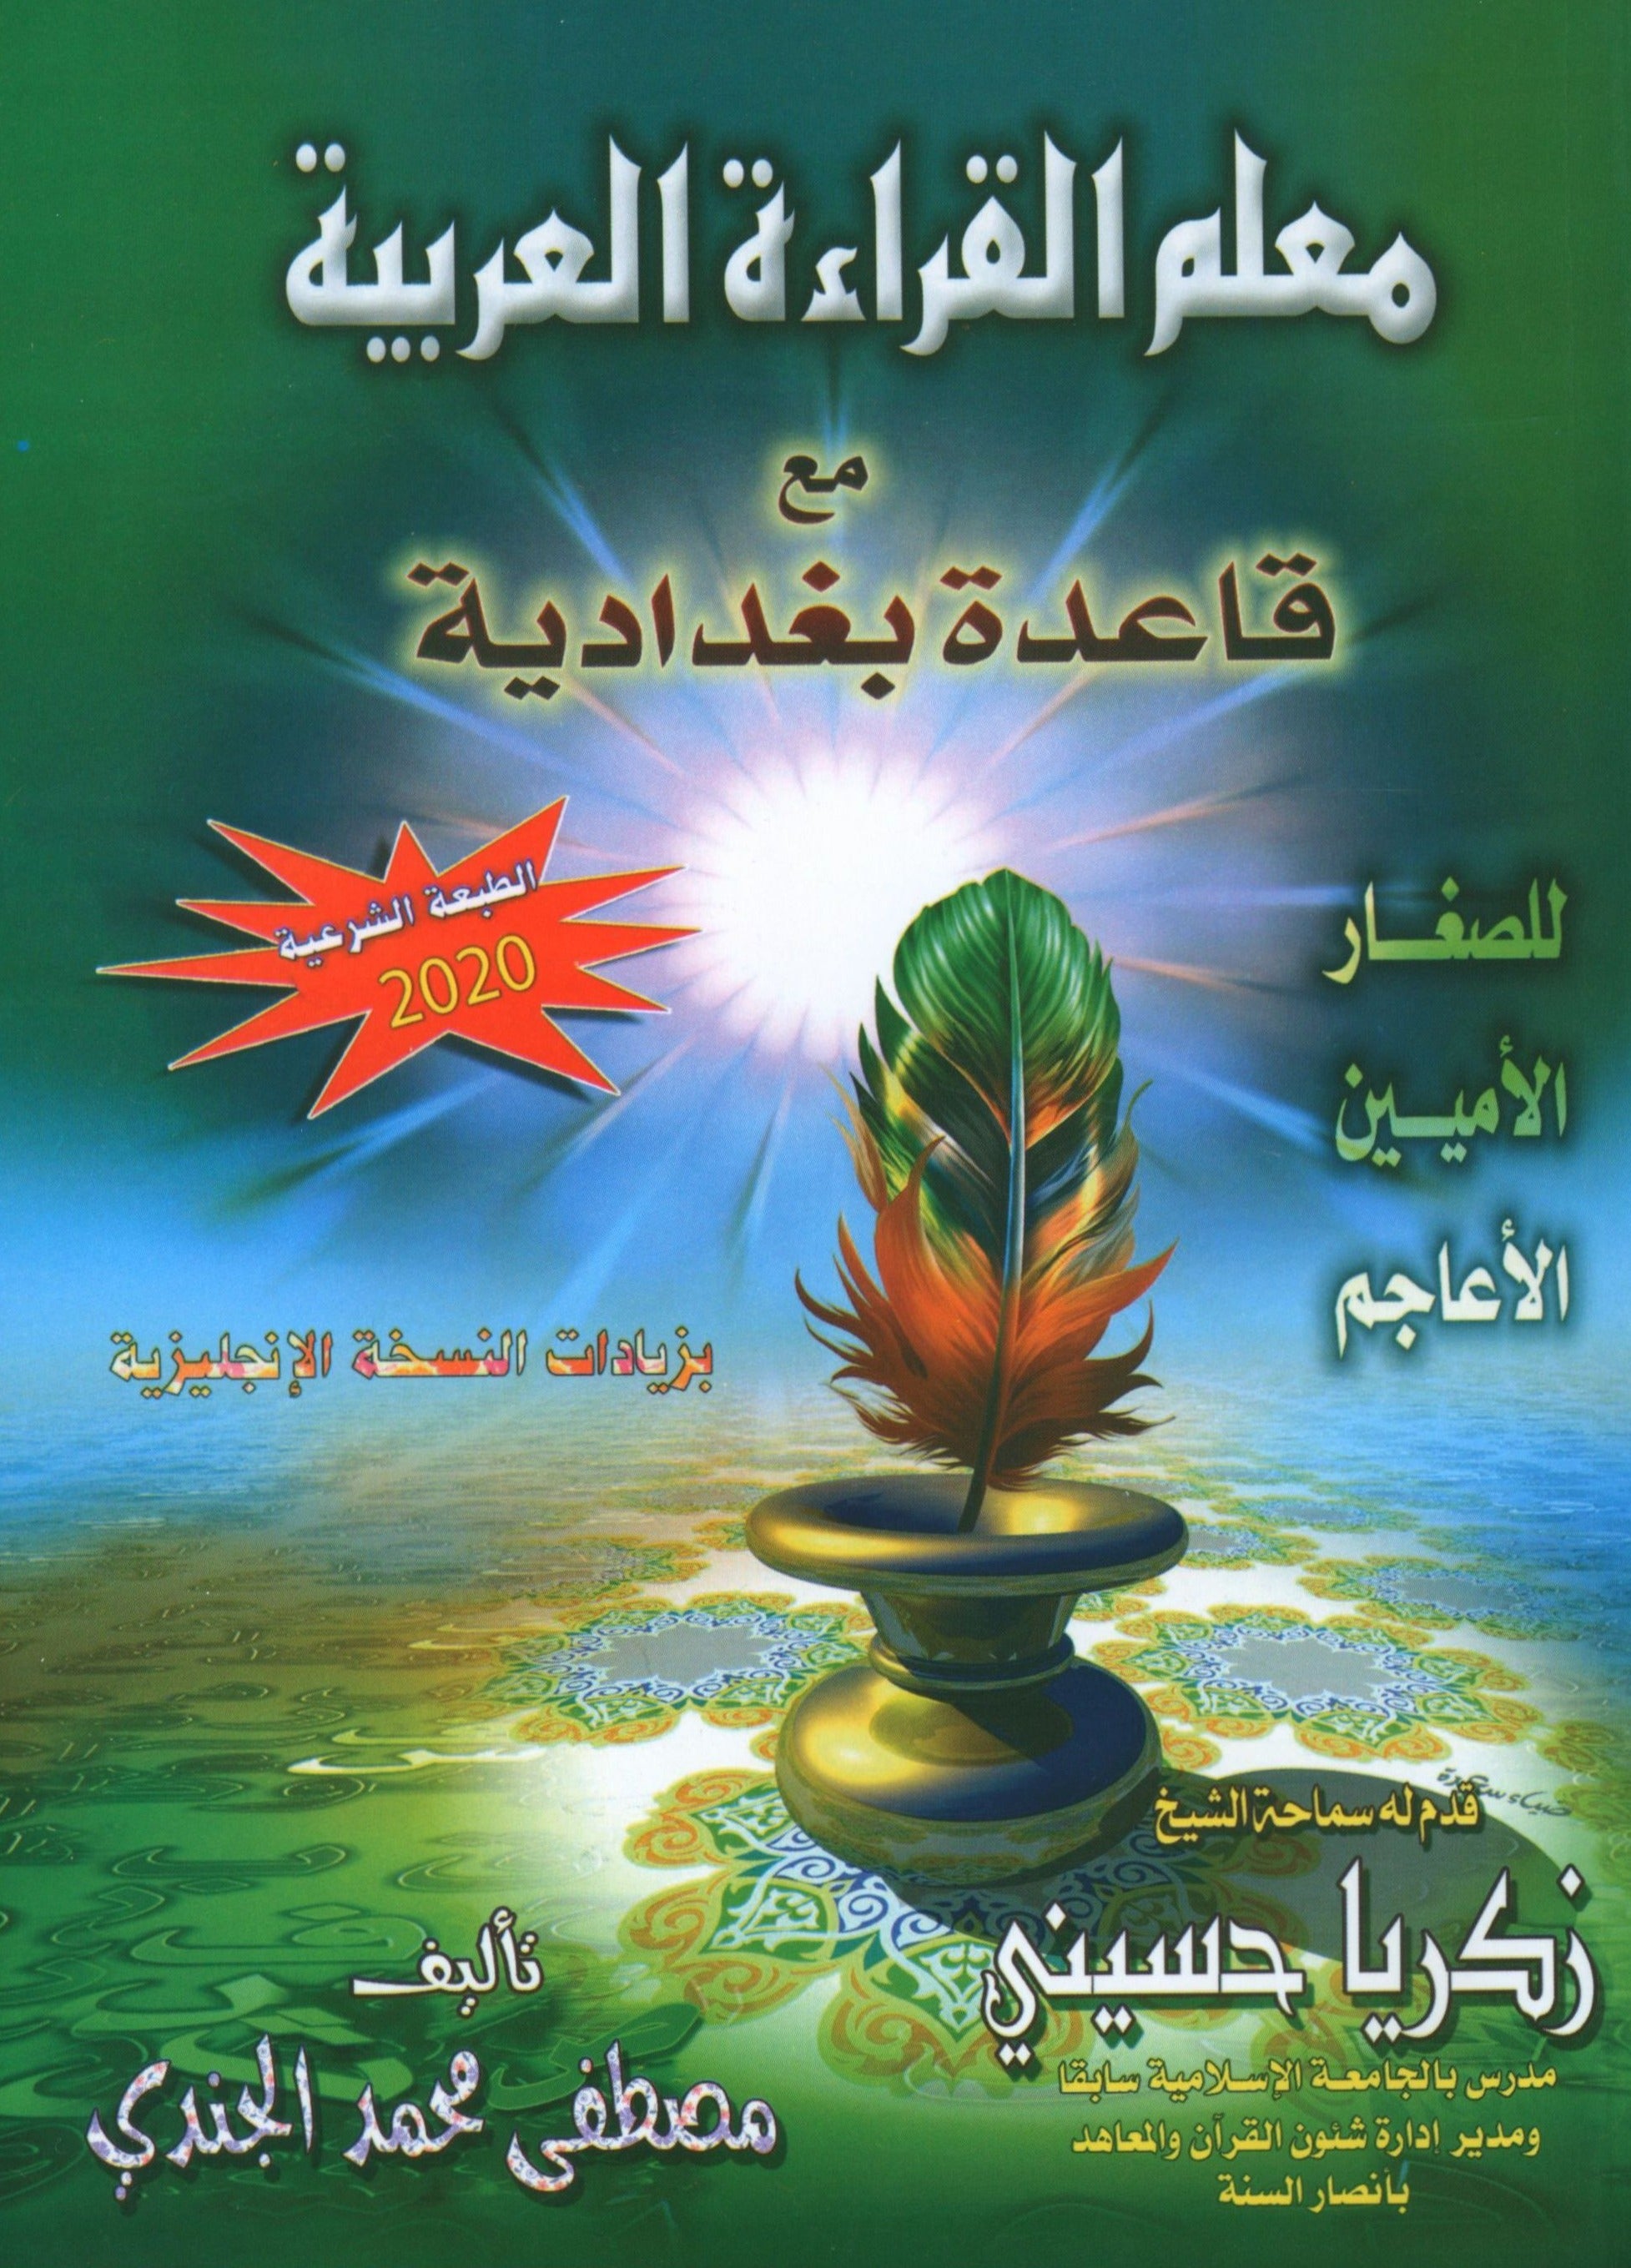 Quran & Arabic Reading Teacher - Baghdadi Qaida معلم القراءة العربية و القرآن مع قاعدة بغدادية